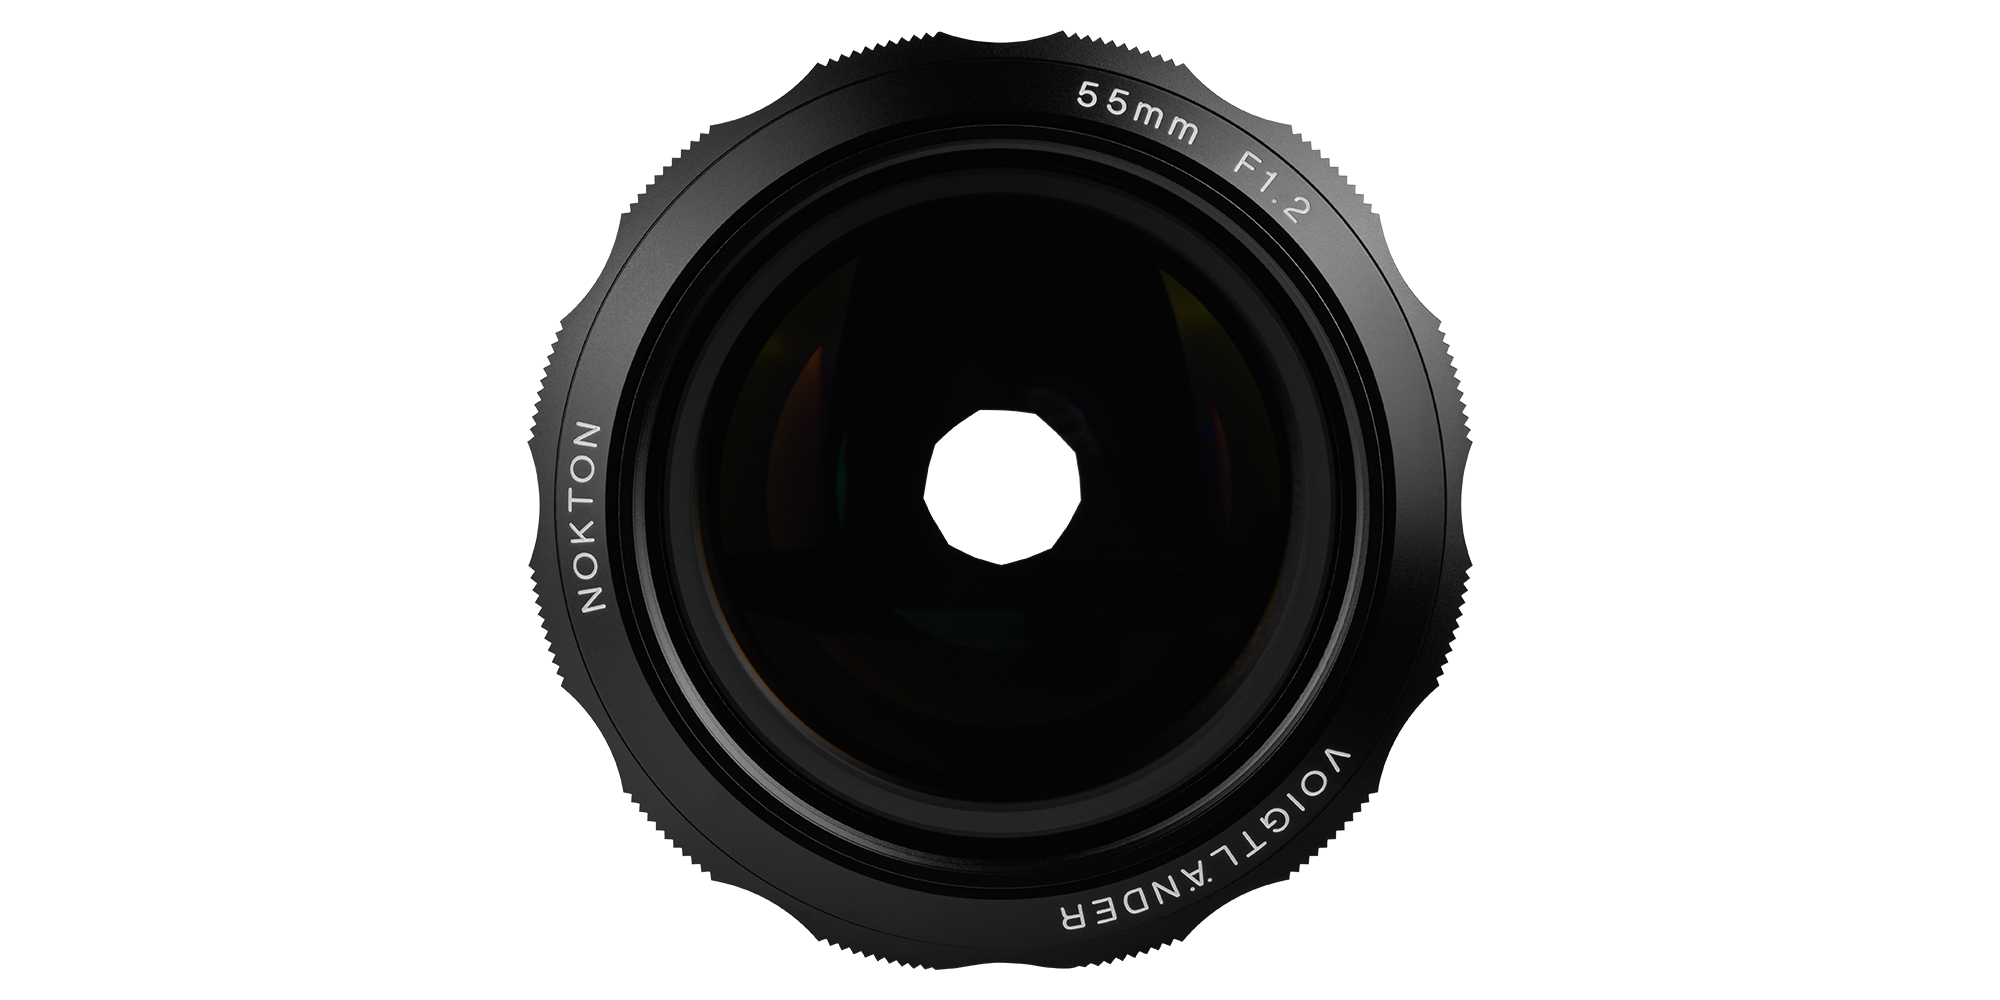 Obiektyw Voigtlander Nokton SL IIs 55 mm f/1,2 do Nikon F - Płynna kontrola nad światłem